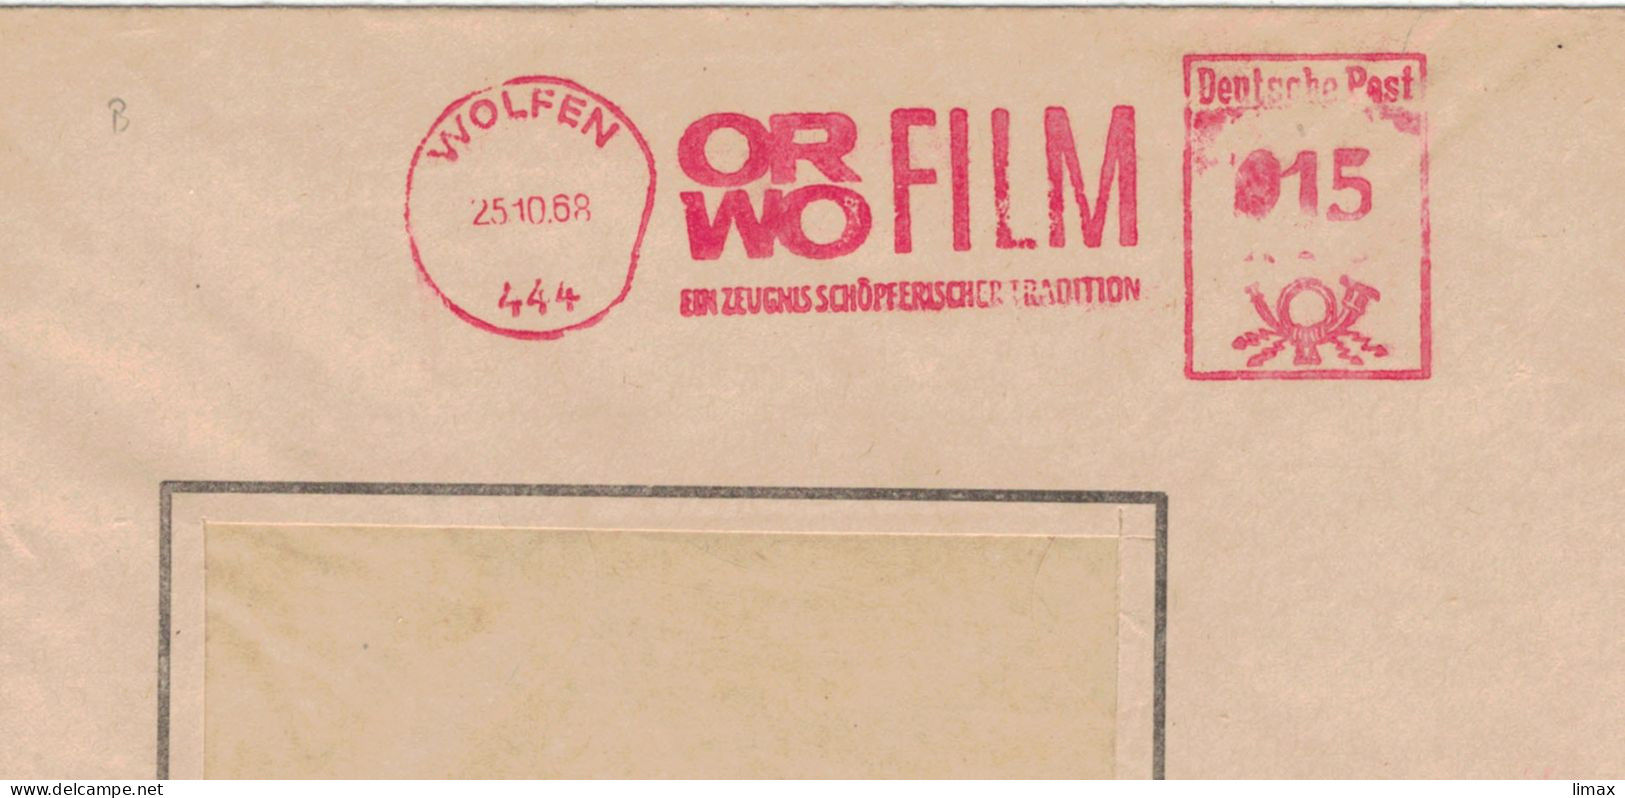 444 Wolfen 1968 Zeugnis Schöpferischer Tradition ORWO Film - Ehem. IG Farben - 1945 Patente An Eastman Kodak - Maschinenstempel (EMA)